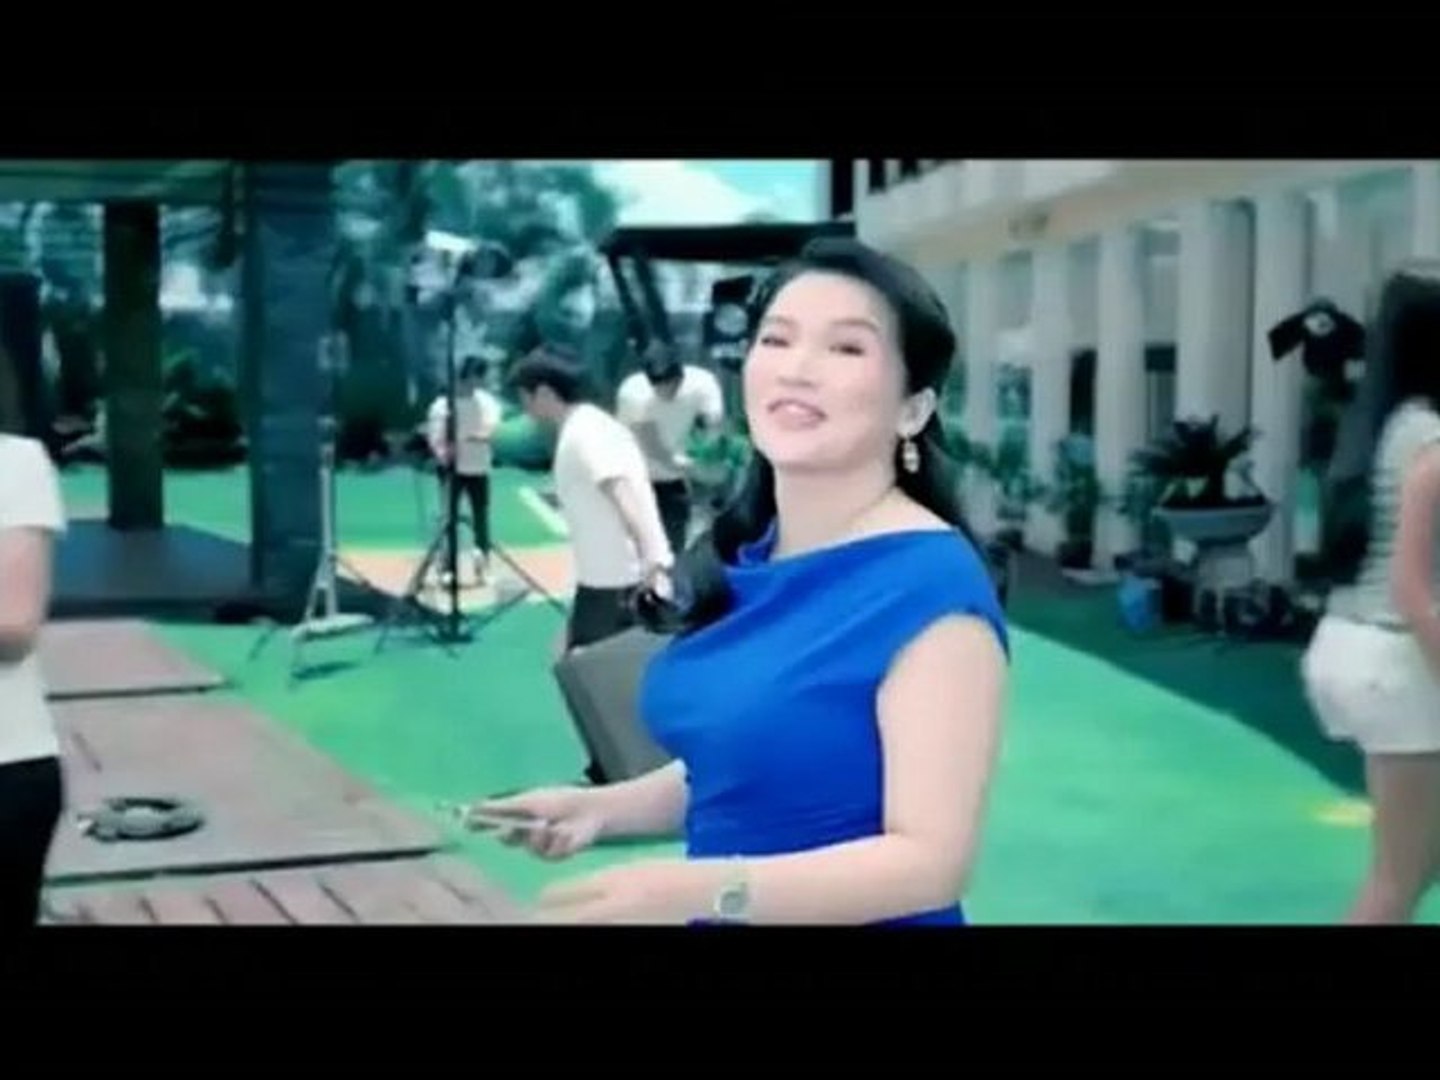 Queen of All Media Kris Aquino for Nokia Lumia Philippines